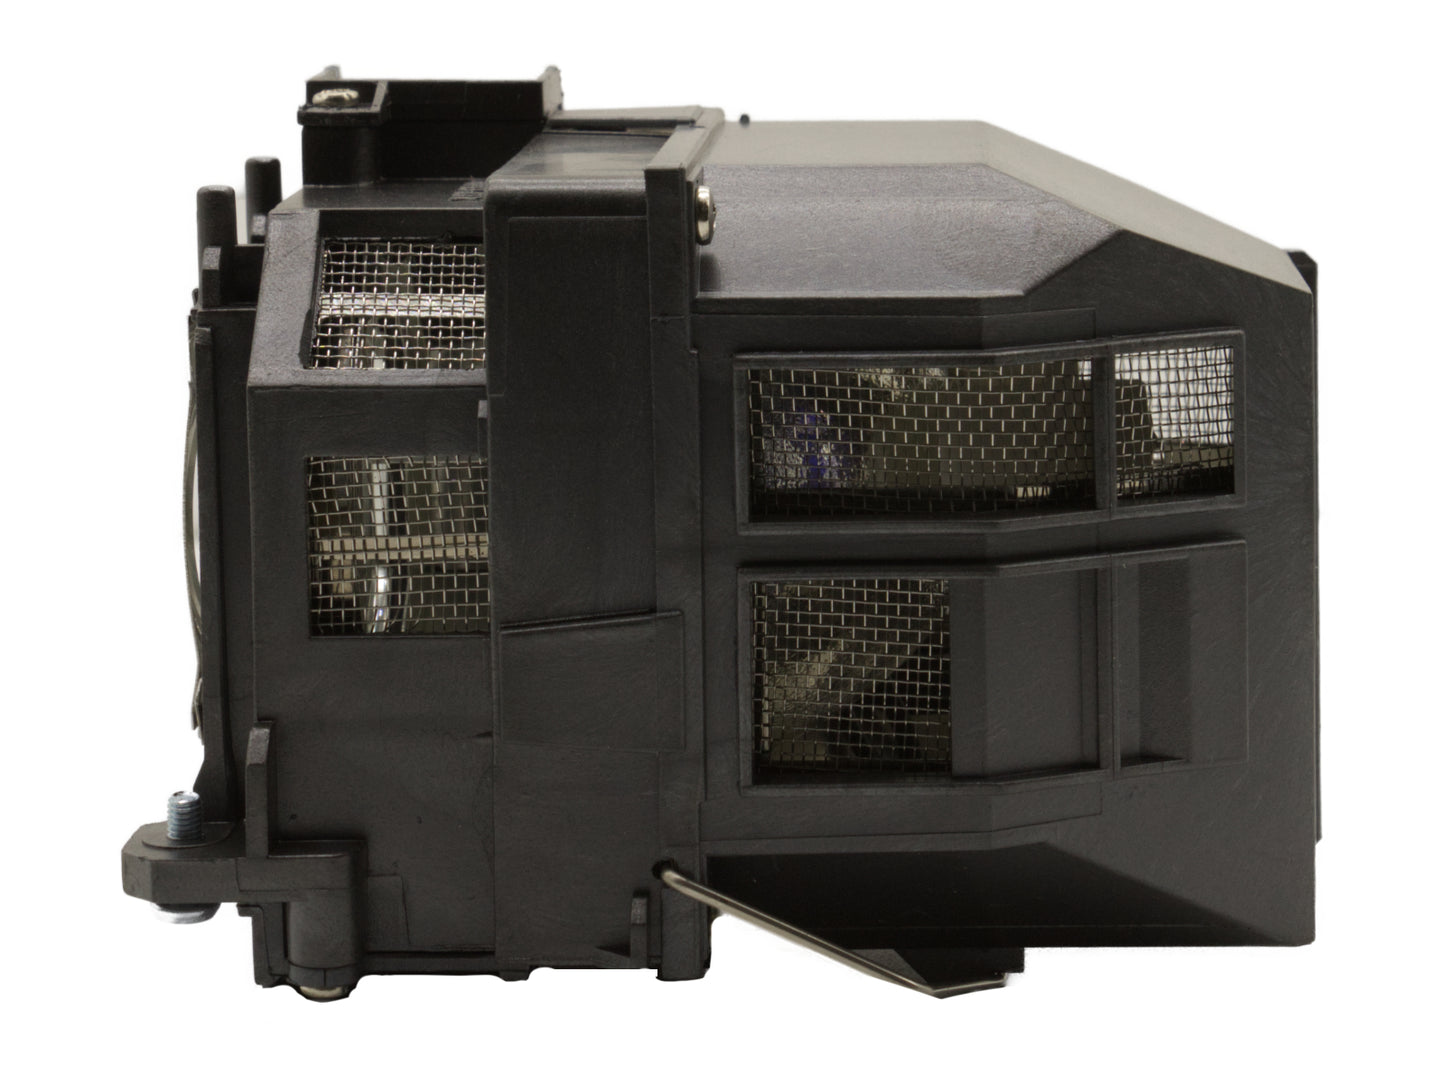 azurano Beamerlampe kompatibel mit EPSON ELPLP71, V13H010L71 für diverse Epson Projektoren der EB-Serie, BrightLink-Serie, PowerLite-Serie, Ersatzlampe mit Gehäuse, 245W - Bild 6